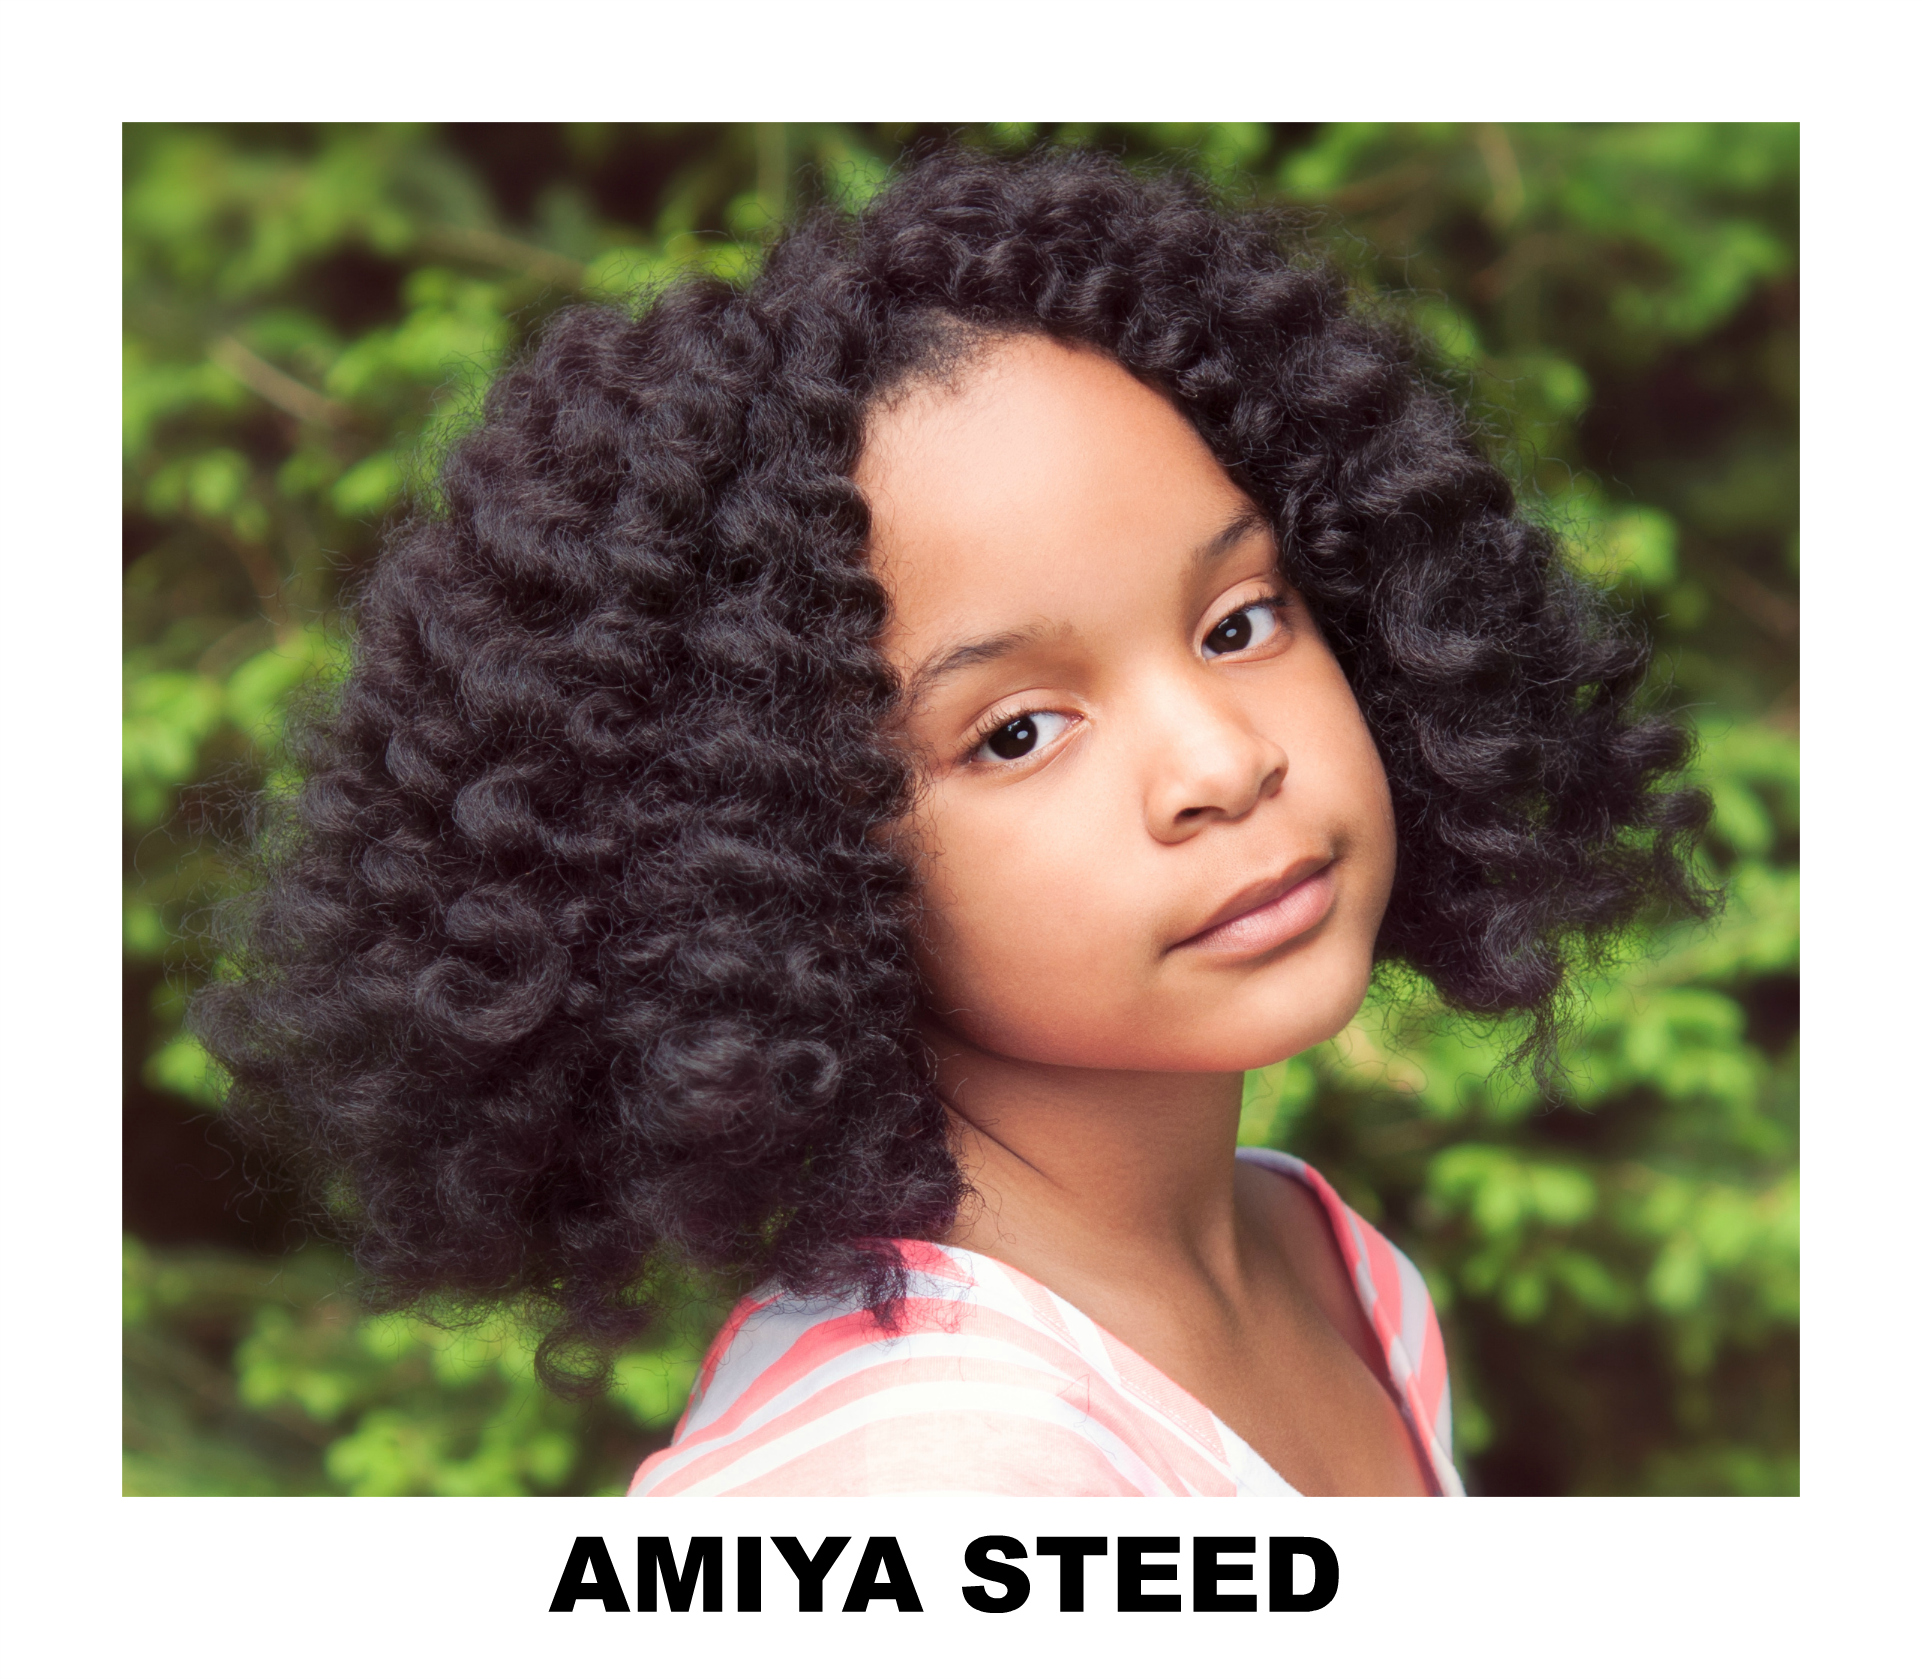 Amiya Steed